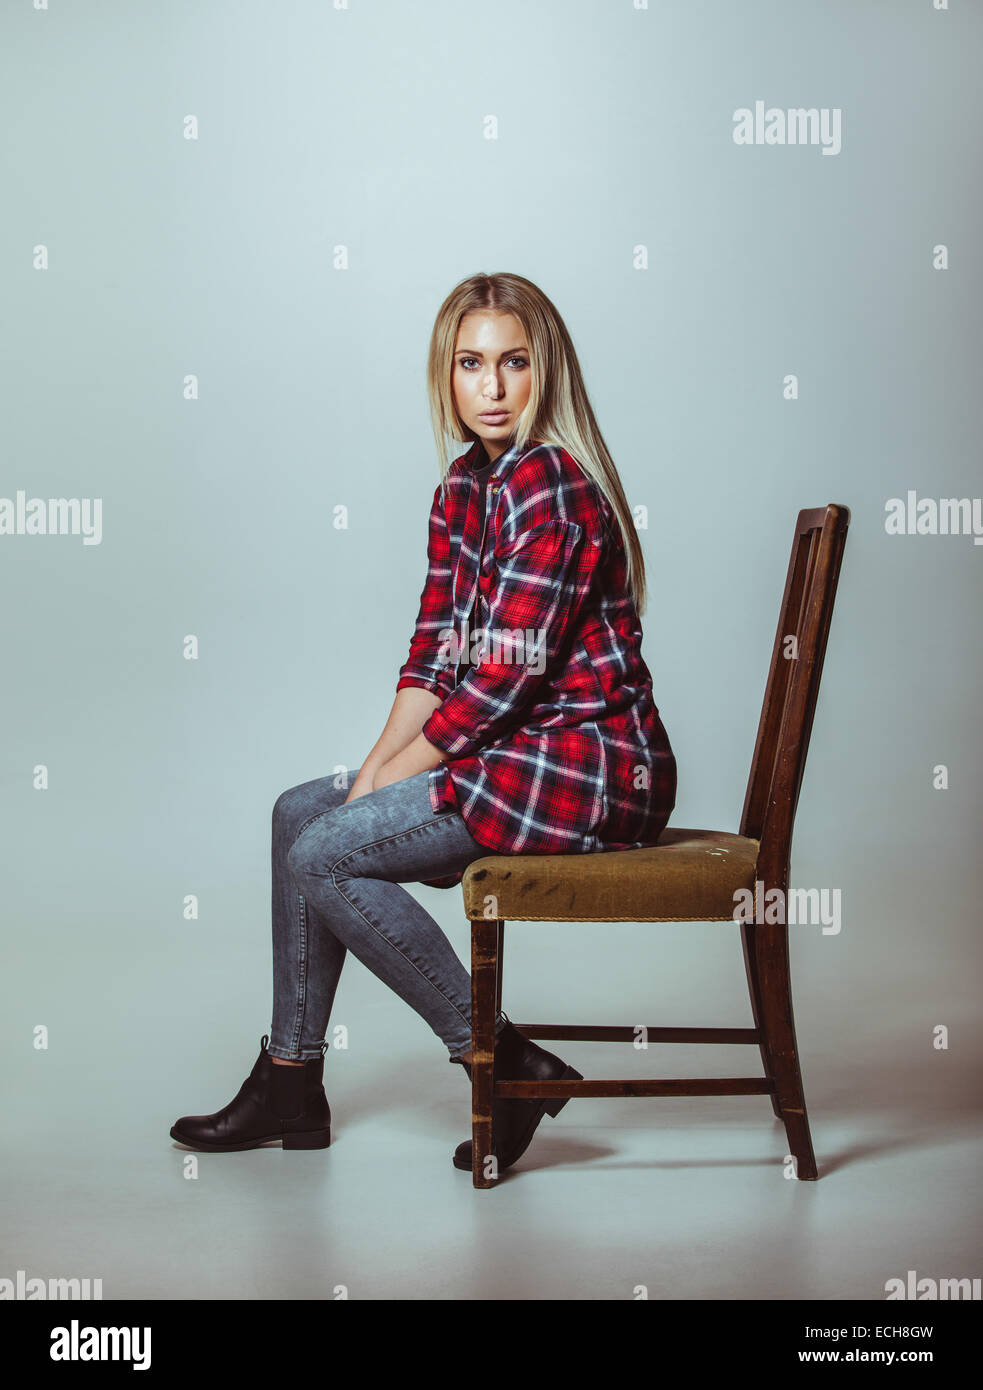 Porträt der schönen jungen Frau in casual-Outfit auf Stuhl sitzend. Kaukasische weibliches Modell Blick in die Kamera. Stockfoto